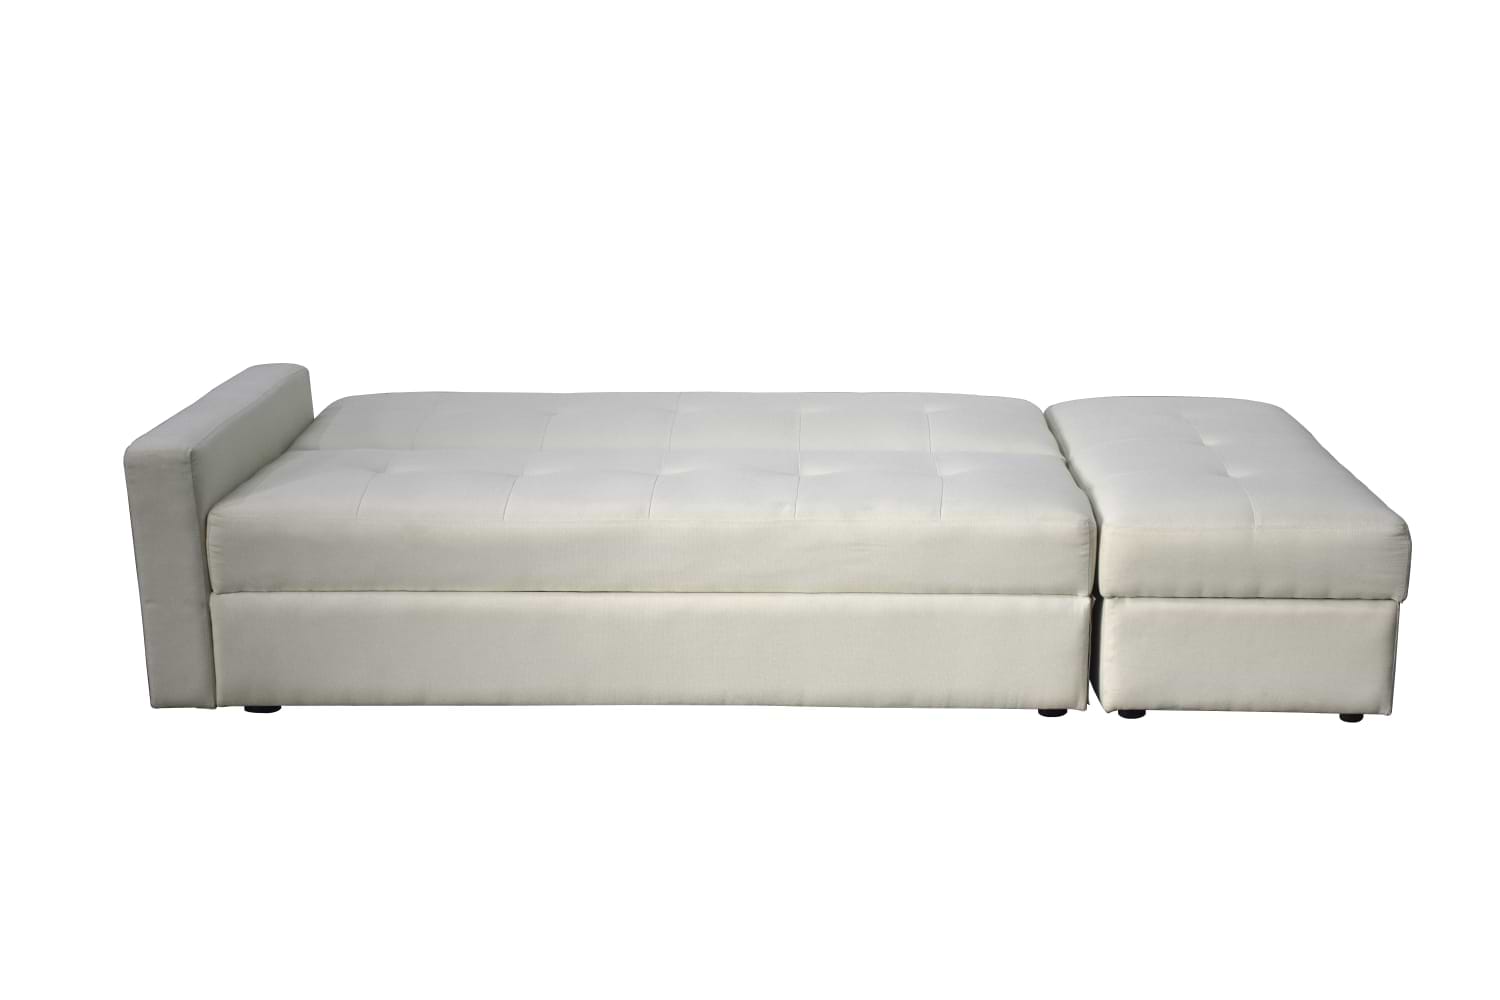 ספה מעוצבת נפתחת למיטה דגם מורן הכוללת הדום וארגז מצעים LEONARDO - צבע בז'